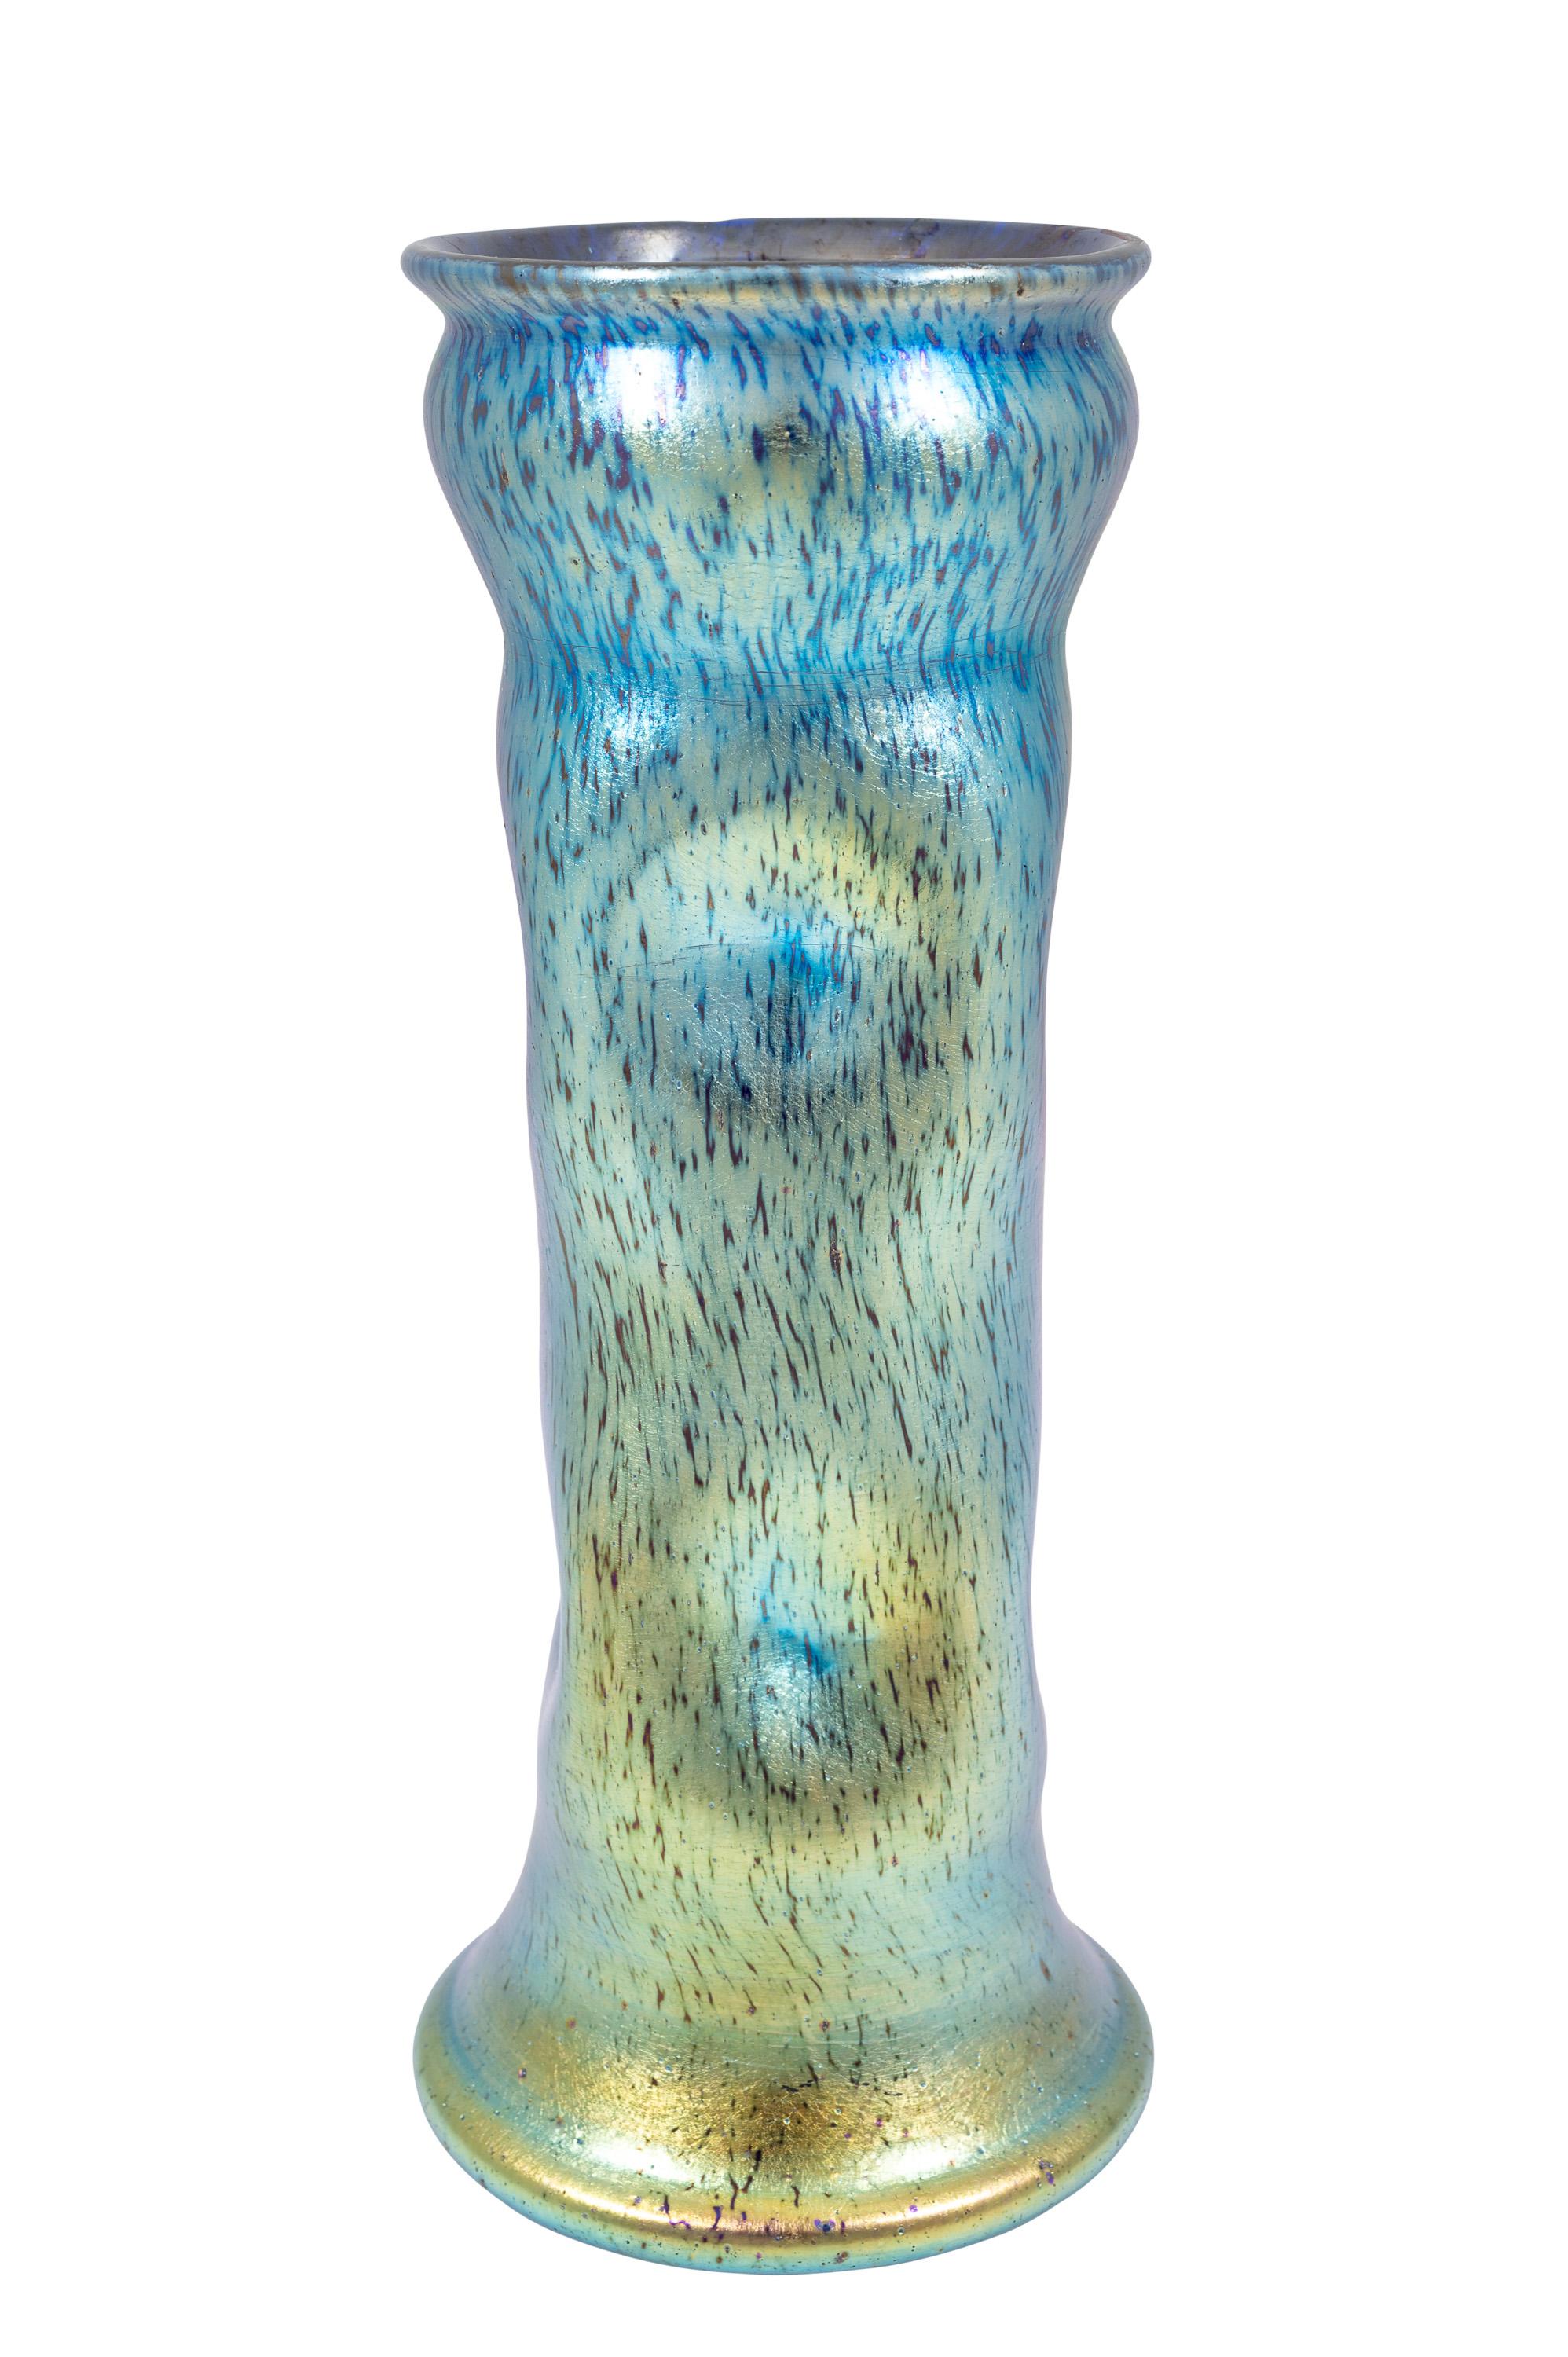 Austrian Bohemian Glass Vase Loetz circa 1900 Art Nouveau Jugendstil Blue Silver For Sale